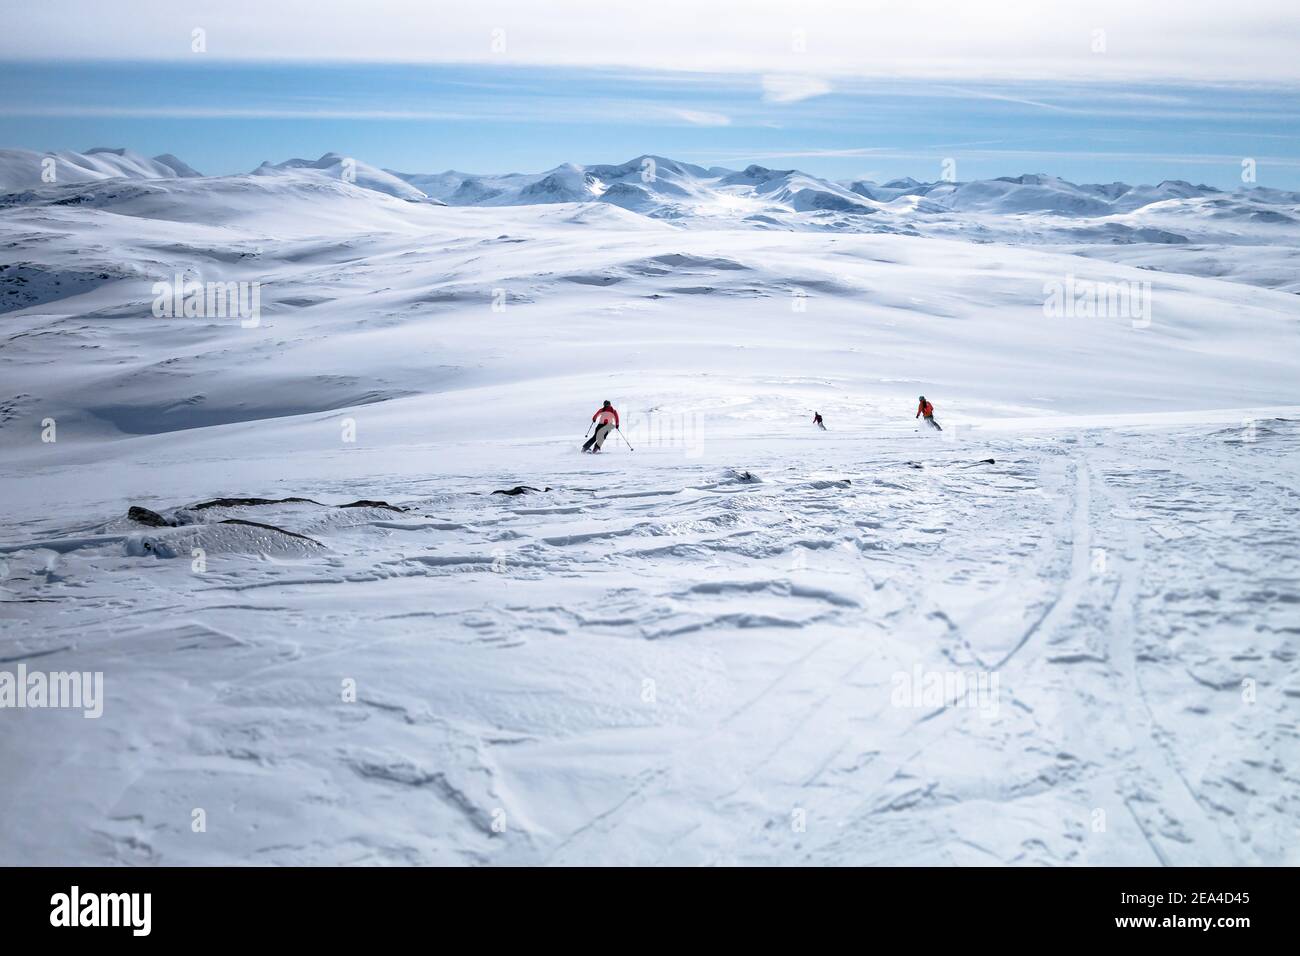 Trois skieurs skient vers les chaînes de montagnes à l'horizon En bas d'un champ de neige poudreuse non suivi tout en héliski en Laponie Suède Banque D'Images